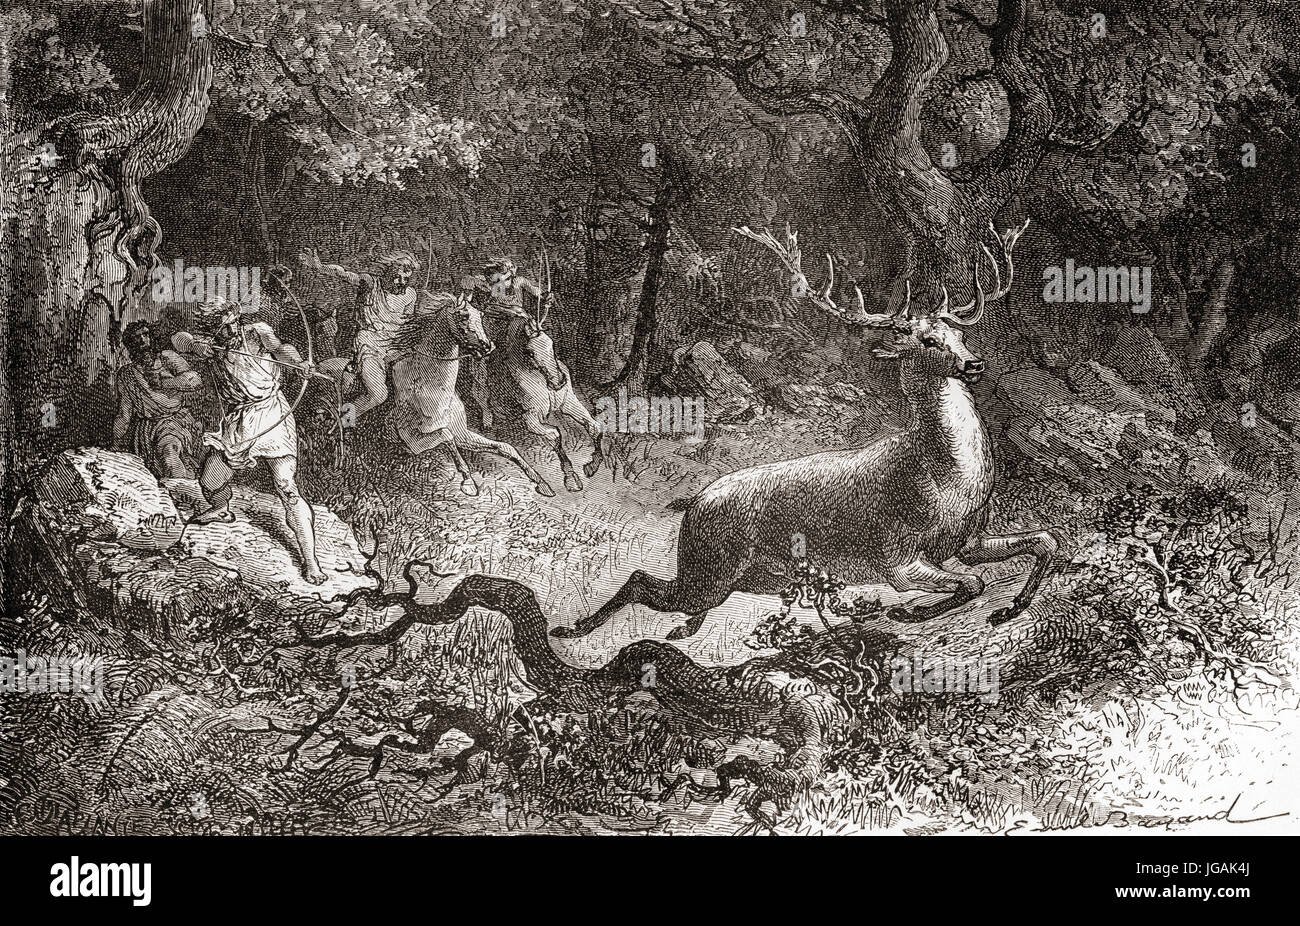 La chasse aux hommes un cerf pendant l'âge du Bronze. À partir de l'homme primitif, publié en 1870. Banque D'Images